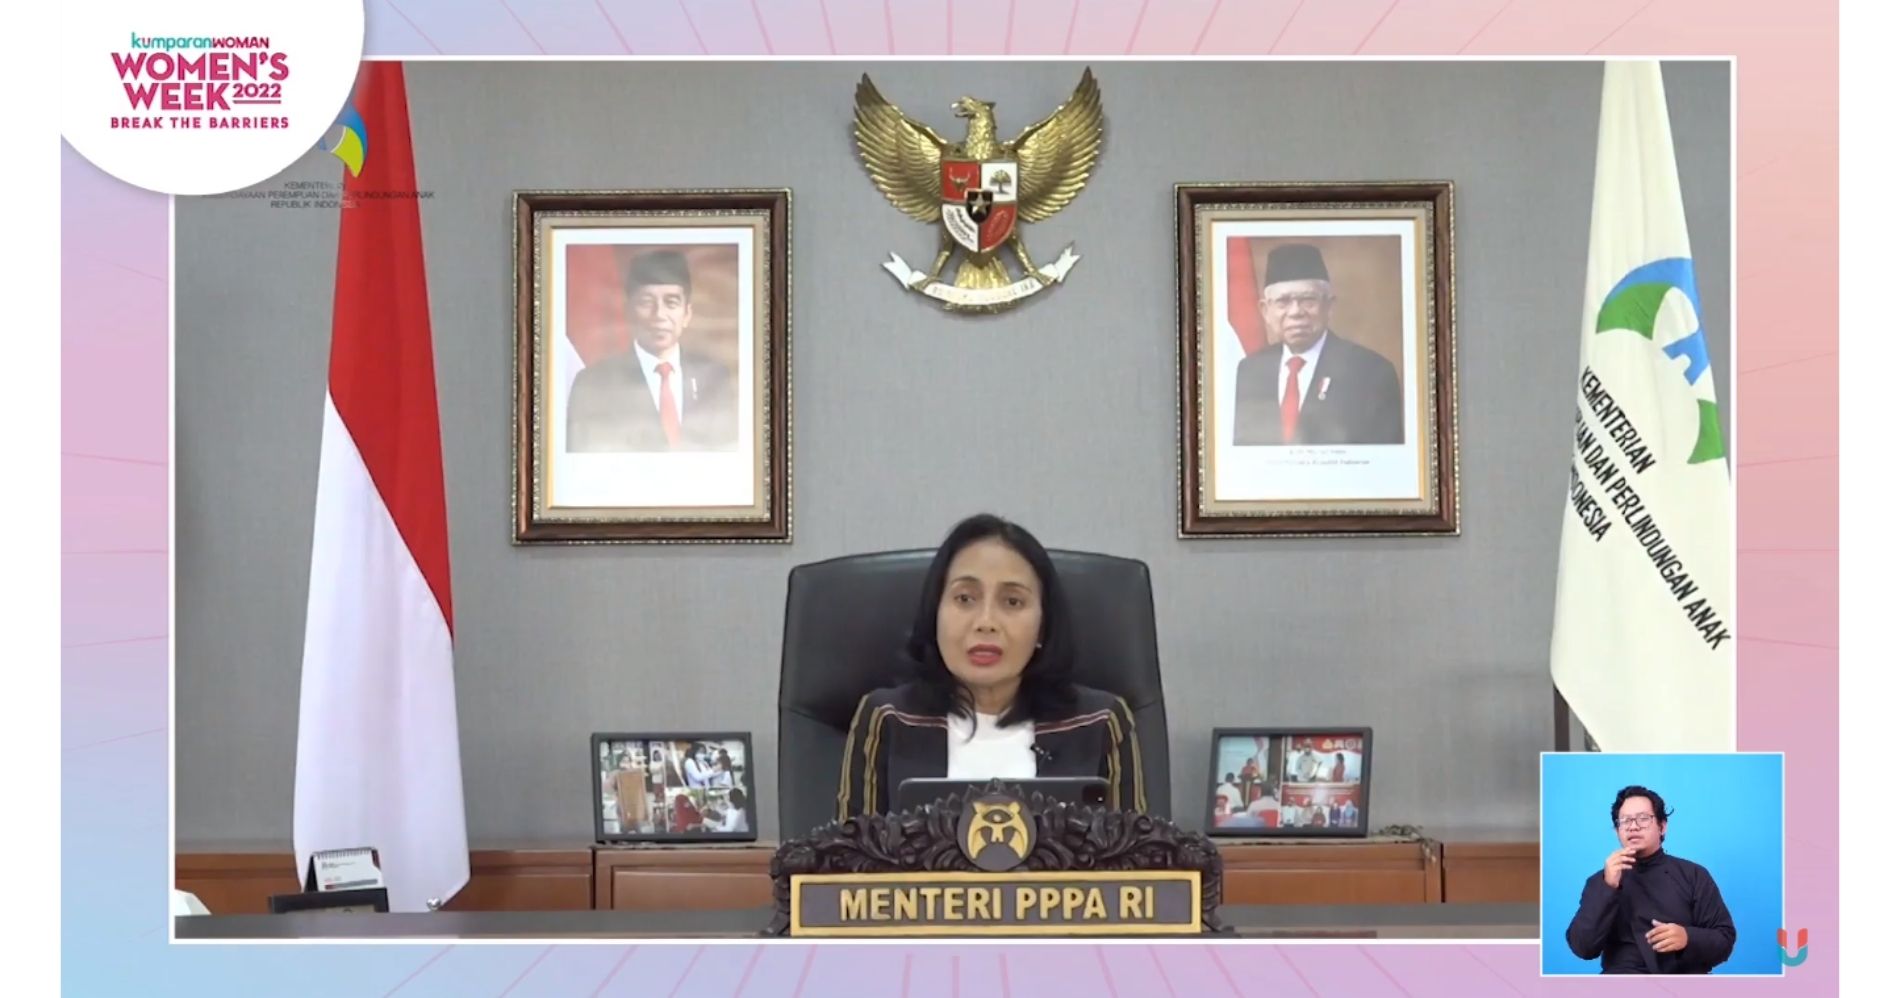 Menteri PPPA, I Gusti Ayu Bintang Darmawati, dalam Women’s Week 2022 - Image: Dok. kumparan.